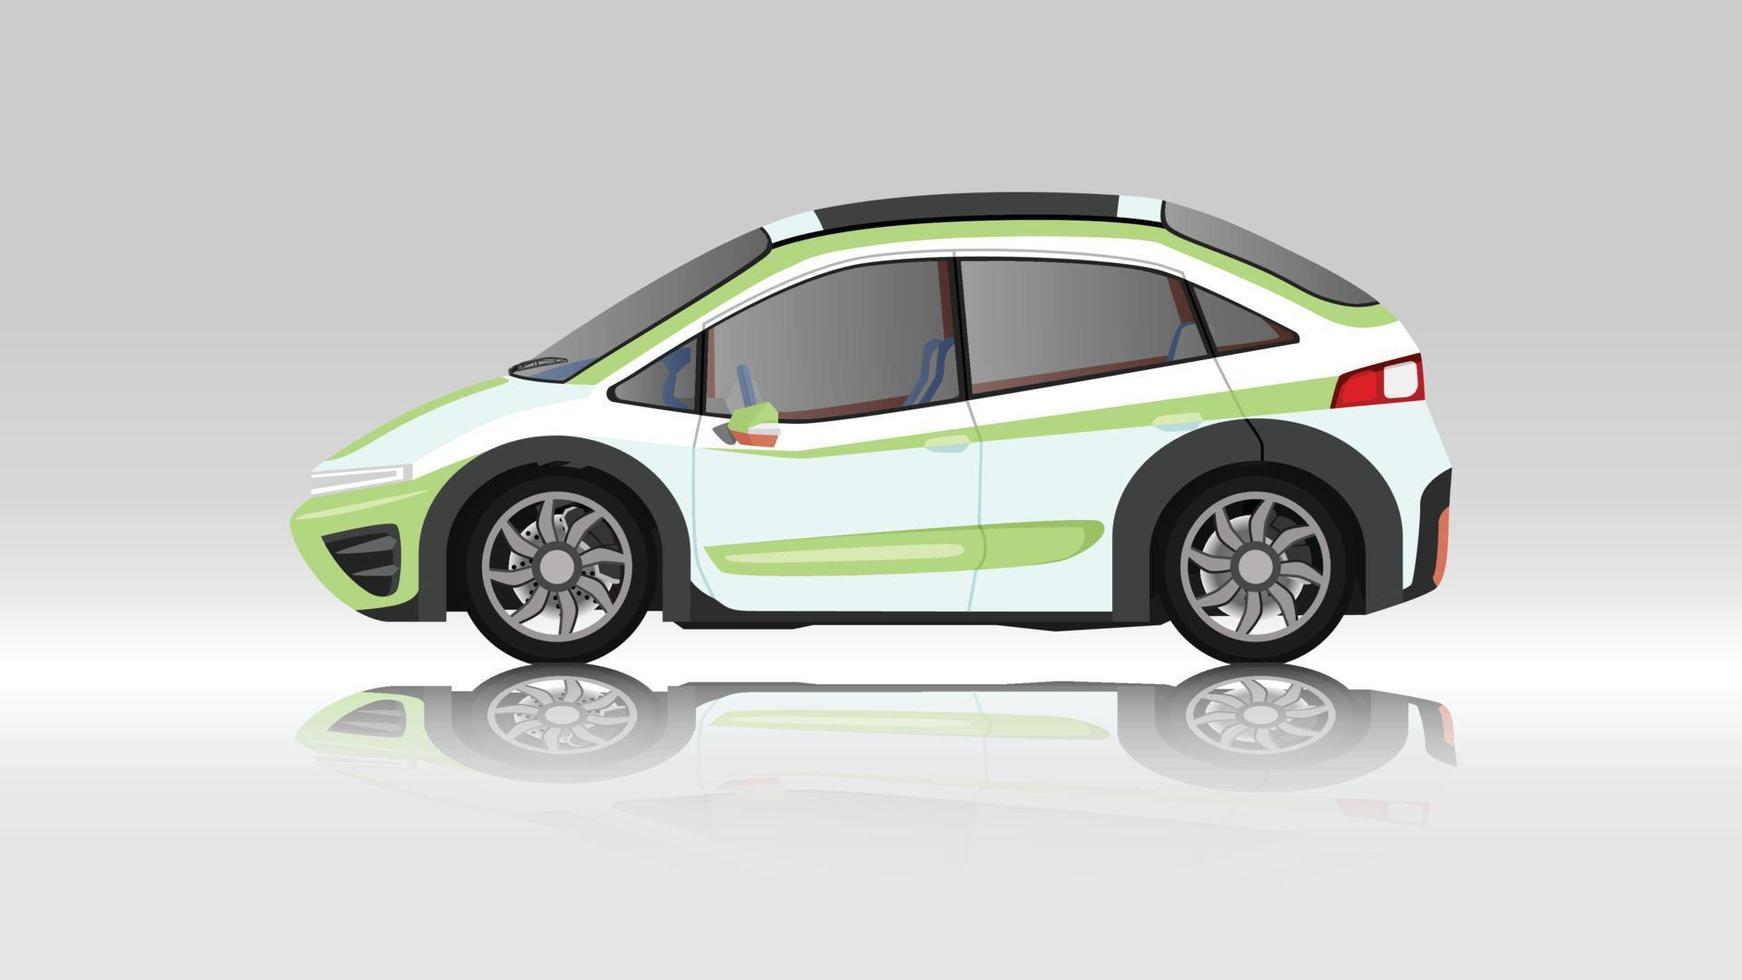 ilustração em vetor conceito do lado detalhado de um carro esportivo eco liso verde. com sombra de carro refletida do chão abaixo. e fundo branco isolado.